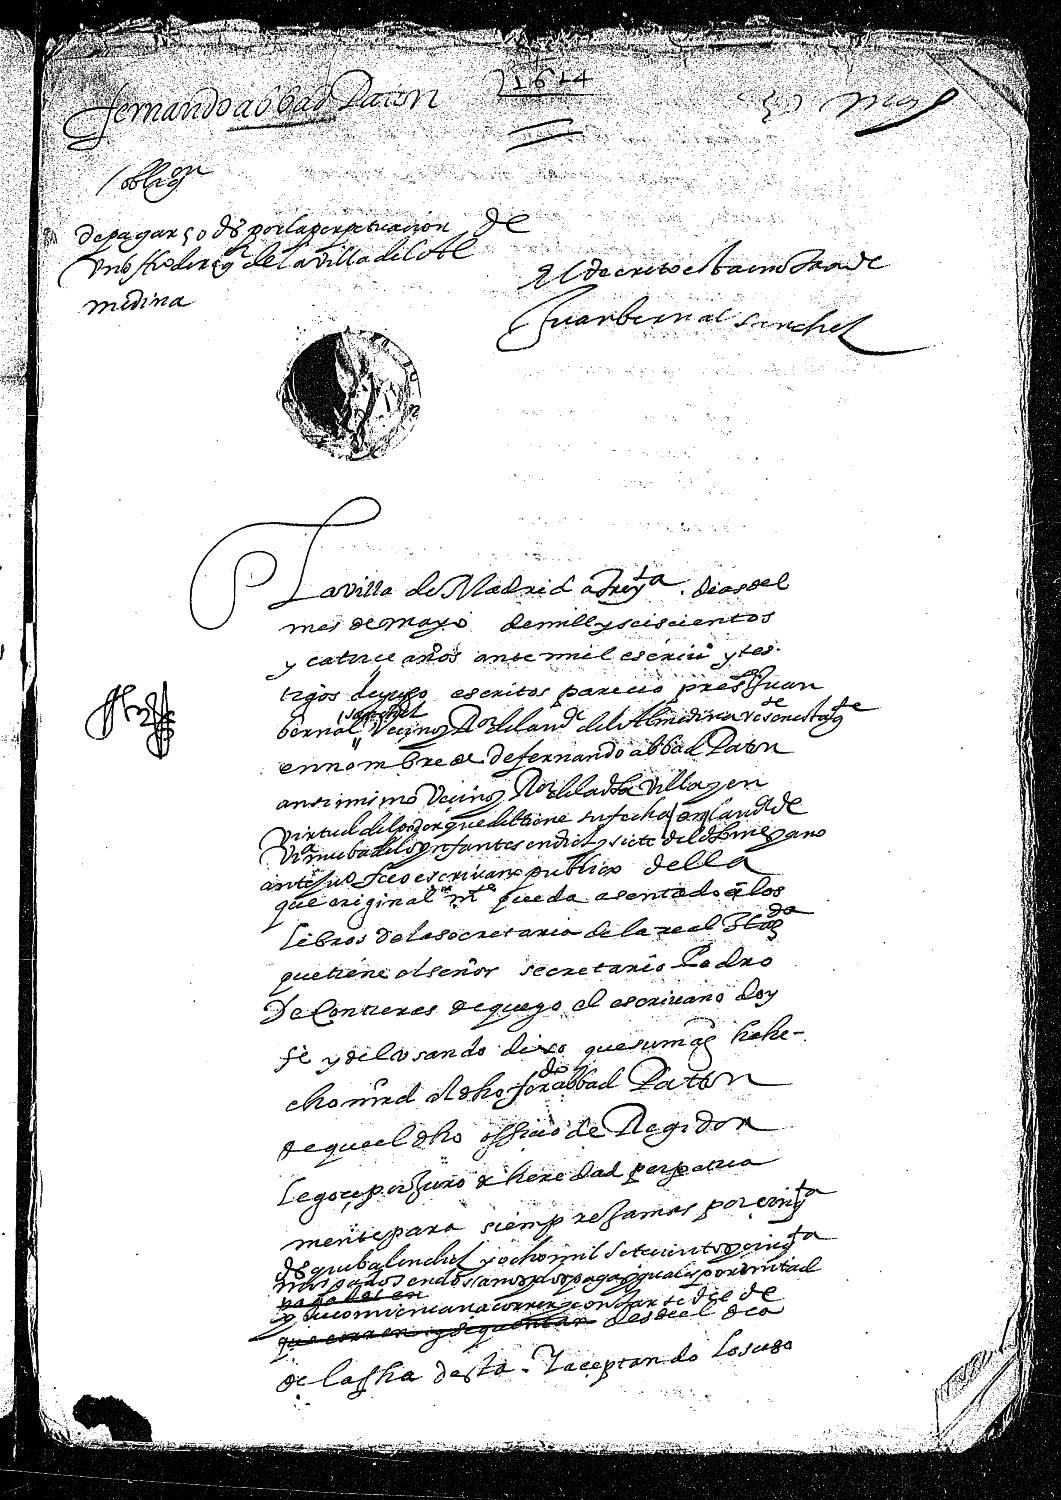 Acta notarial dando fe de la obligación de Juan Bernal, en nombre de Fernando Abad Paton, ambos vecinos y regidores de Almedina, para pagar 50 ducados por la perpetuación de su oficio.